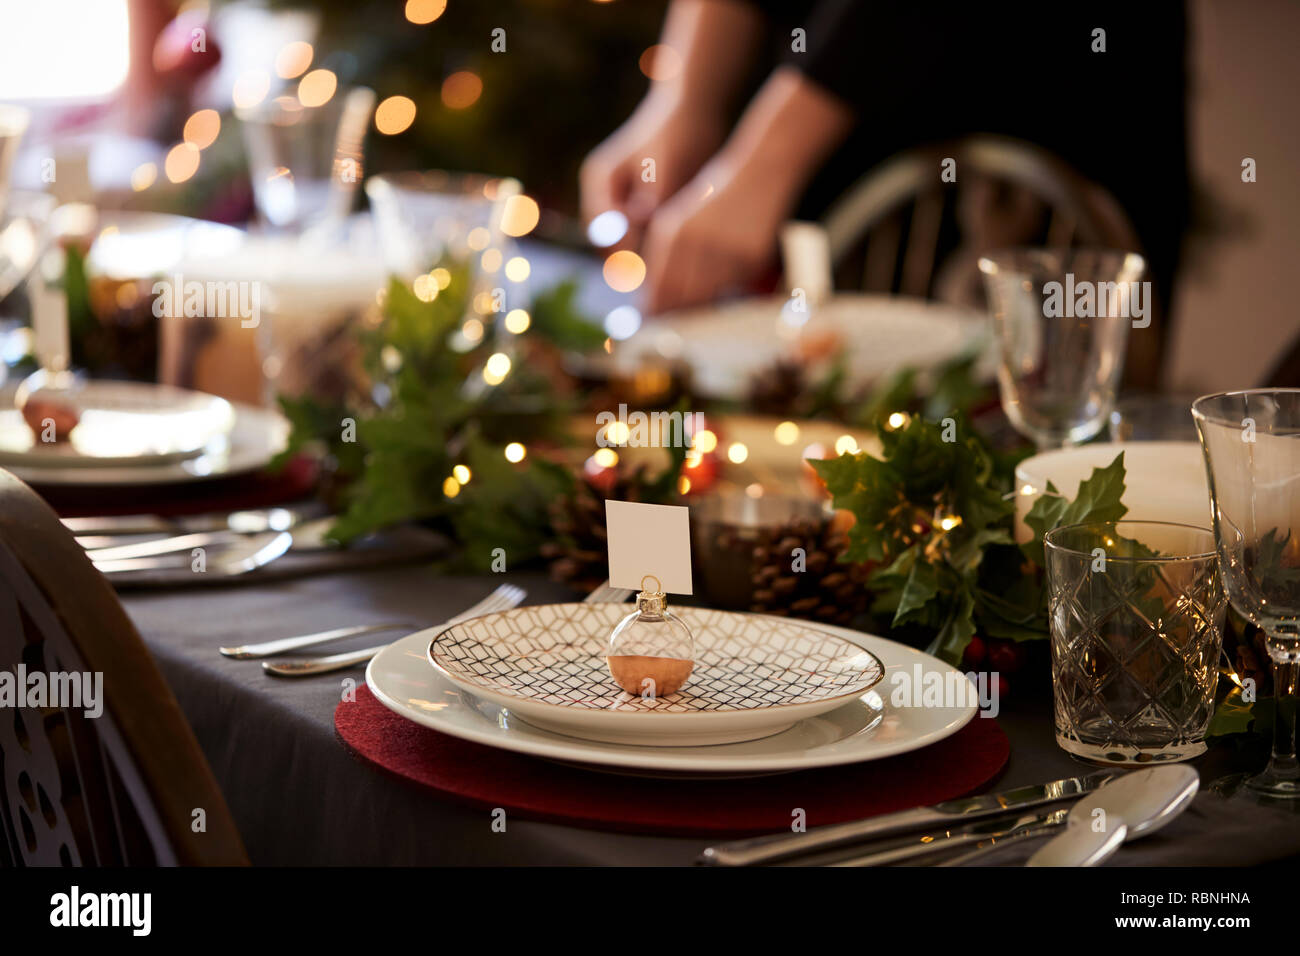 Weihnachten Tischdekoration mit weihnachtskugel Name Kartenhalter auf einer Platte und Grün und Rot Tischdekoration angeordnet Stockfoto